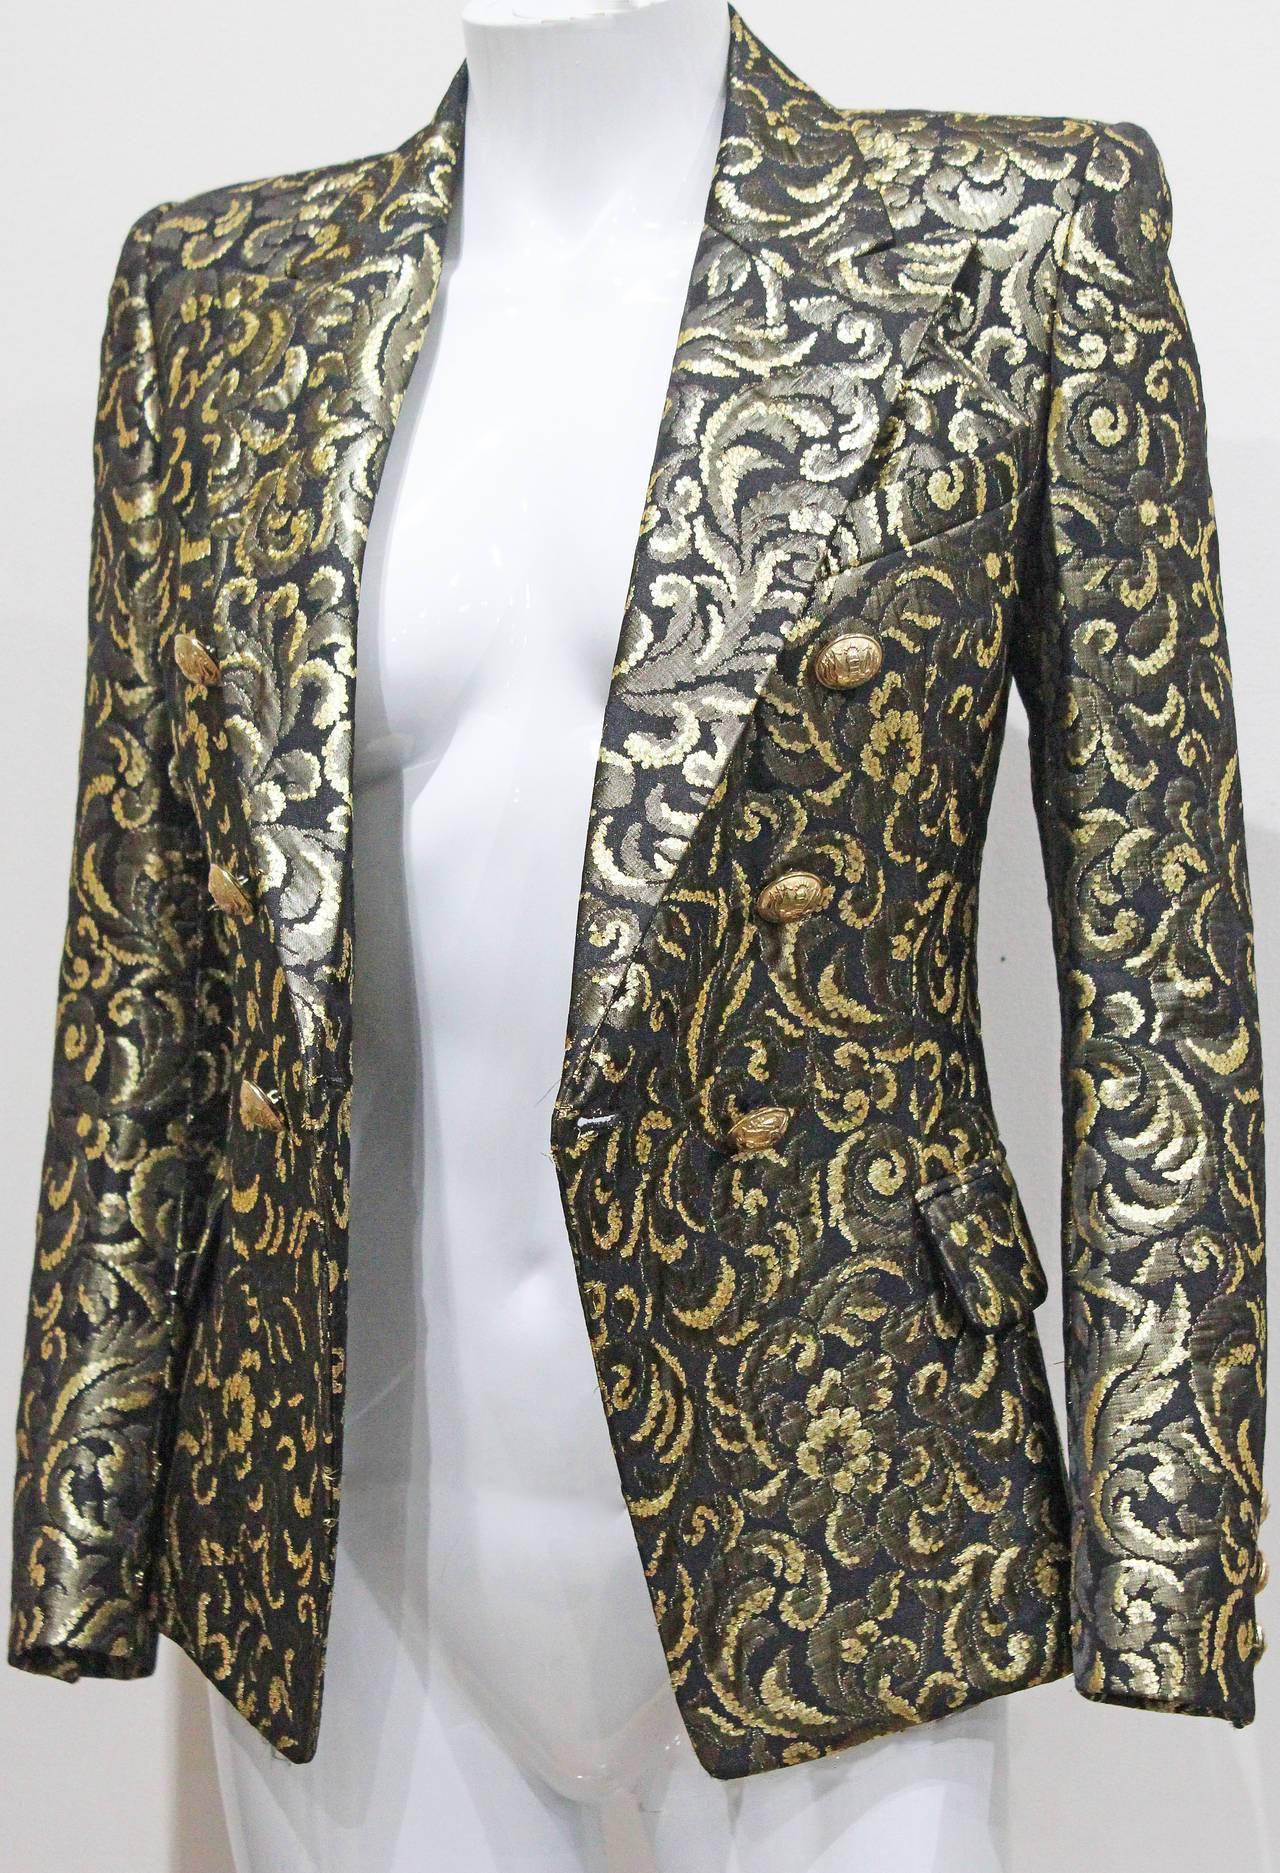 Un blazer de soirée Balmain rare et très recherché, issu de la collection Fall 2010, conçu par Christophe Decarnin. Le blazer est confectionné dans un tissu jacquard de haute qualité avec des fils d'écaille dorés.  

 Français 36 / UK 8 / Italie